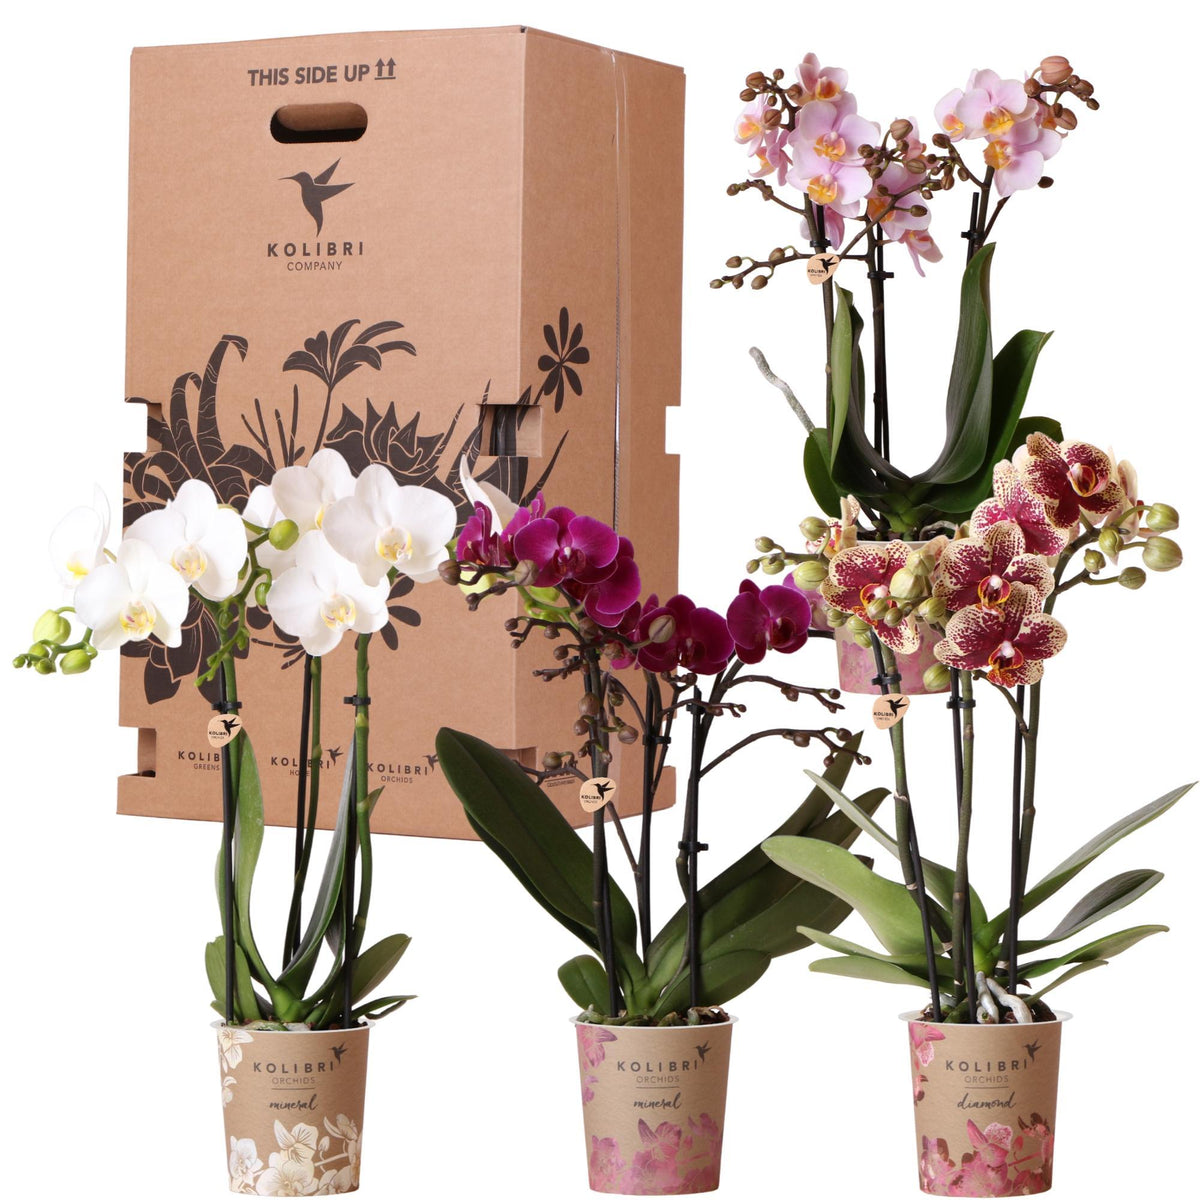 Verrassingsmix voor planten - voordelige plantenbox met 4 diverse orchideeën rechtstreeks van de kweker.